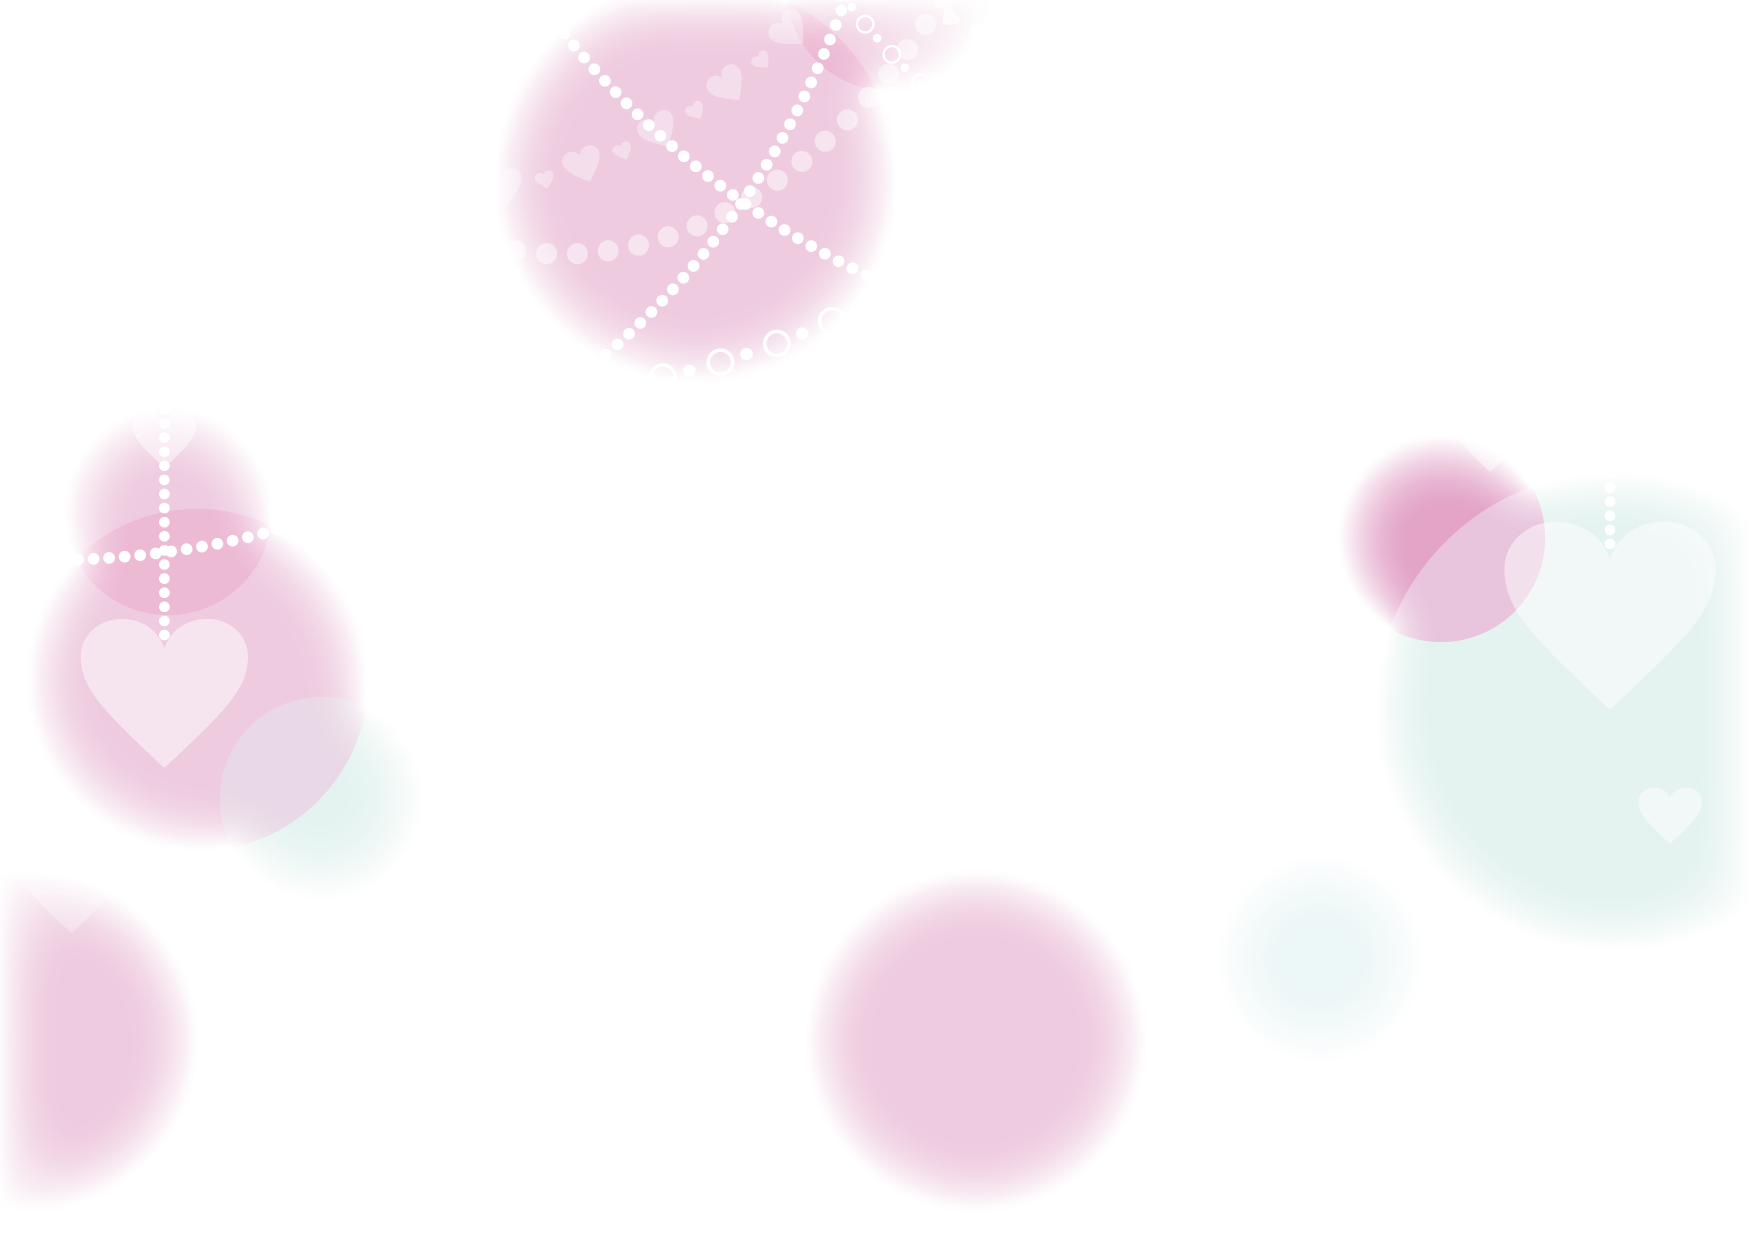 可愛いイラスト無料 ハート チェーン 背景 紫色 Free Illustration Heart Chain Background Purple 公式 イラスト素材サイト イラストダウンロード